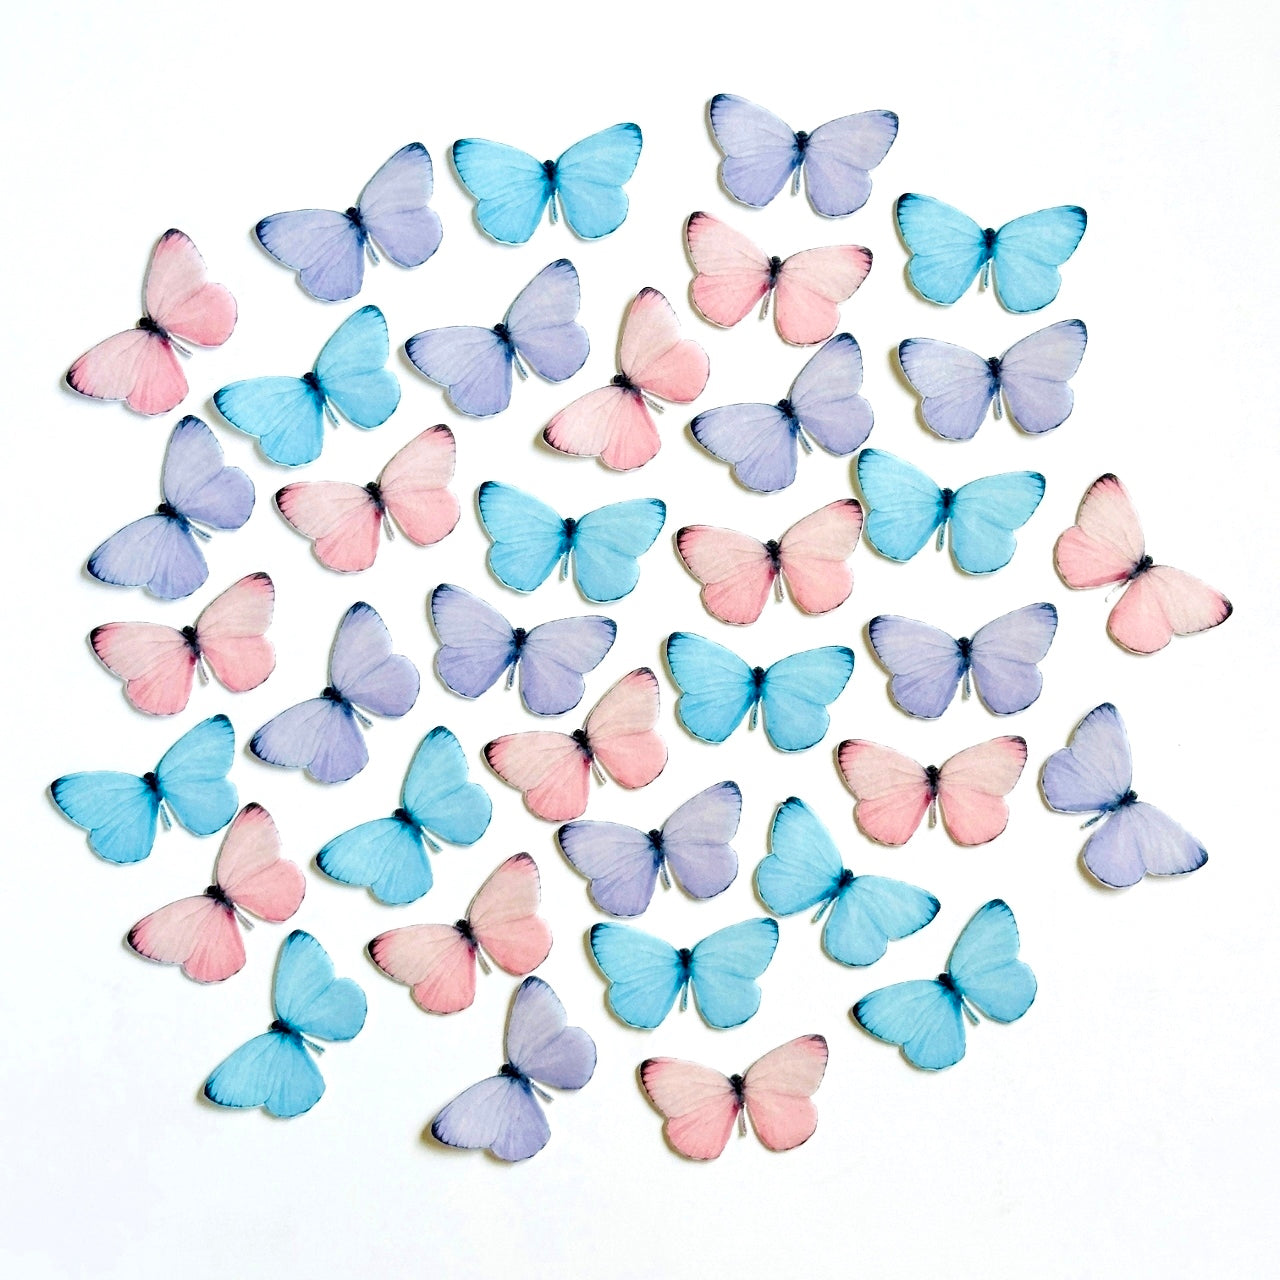 Βρώσιμες πεταλούδες παστέλ χρώματα 36 τεμ.